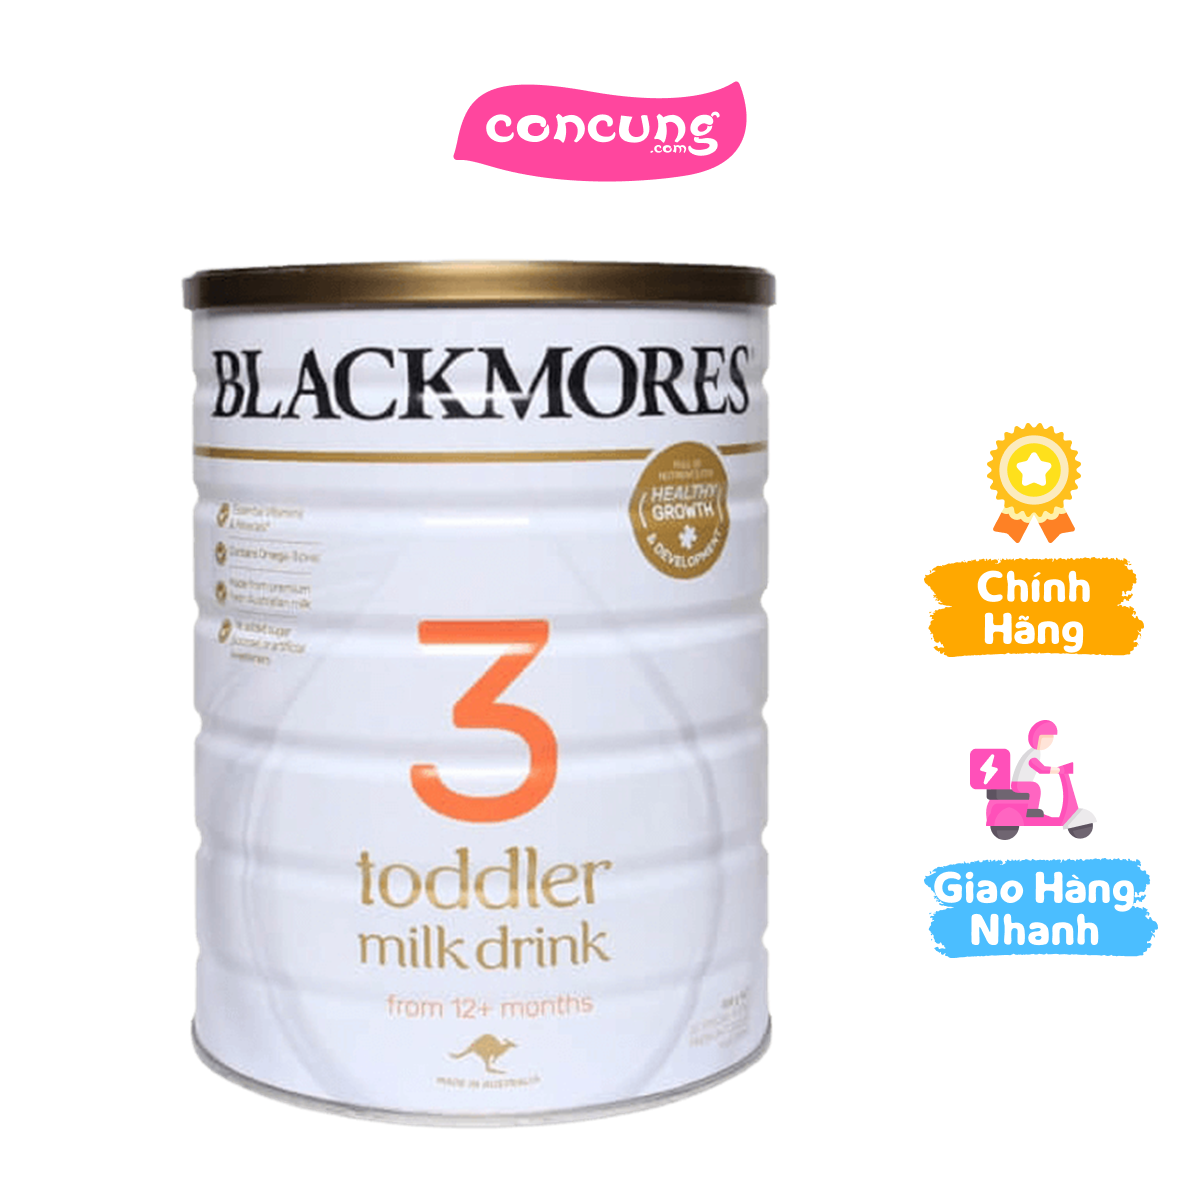 Blackmores Step 3 Toddler Milk Drink